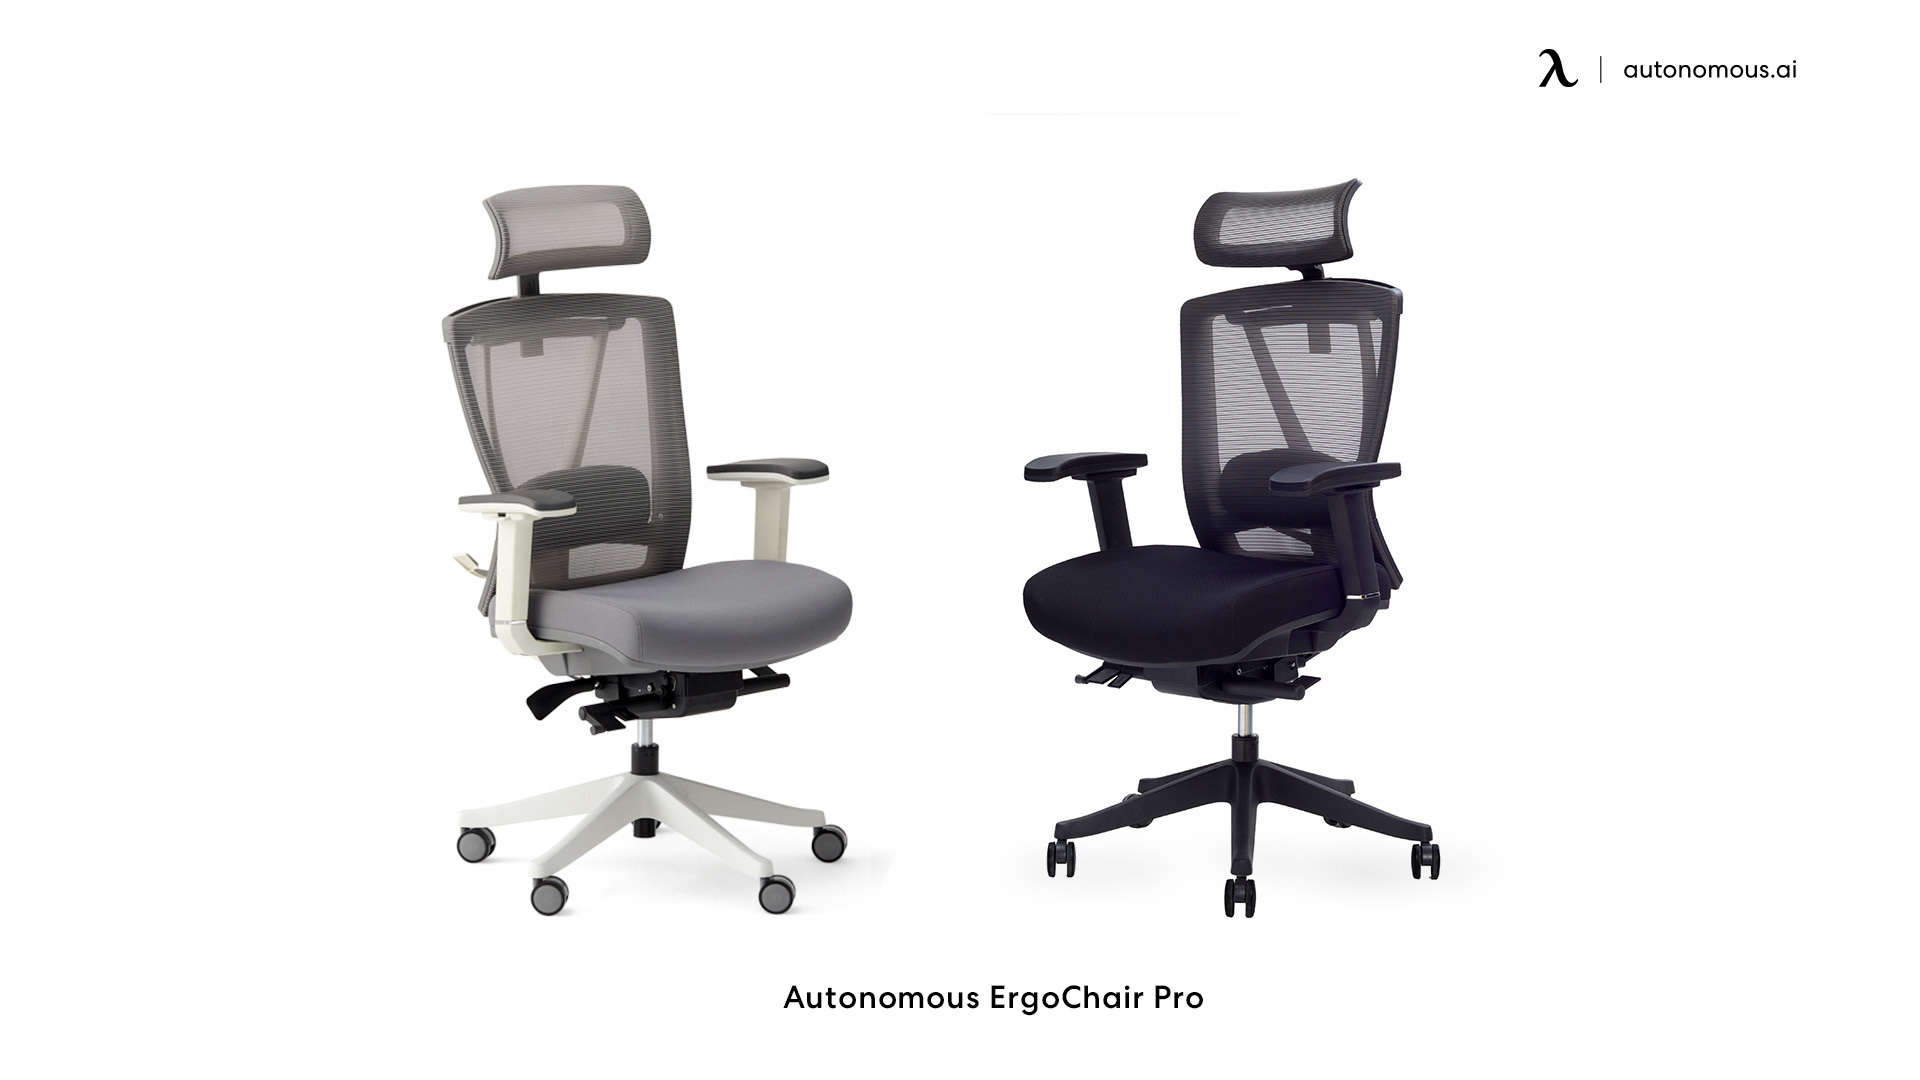 ErgoChair Pro black office chair